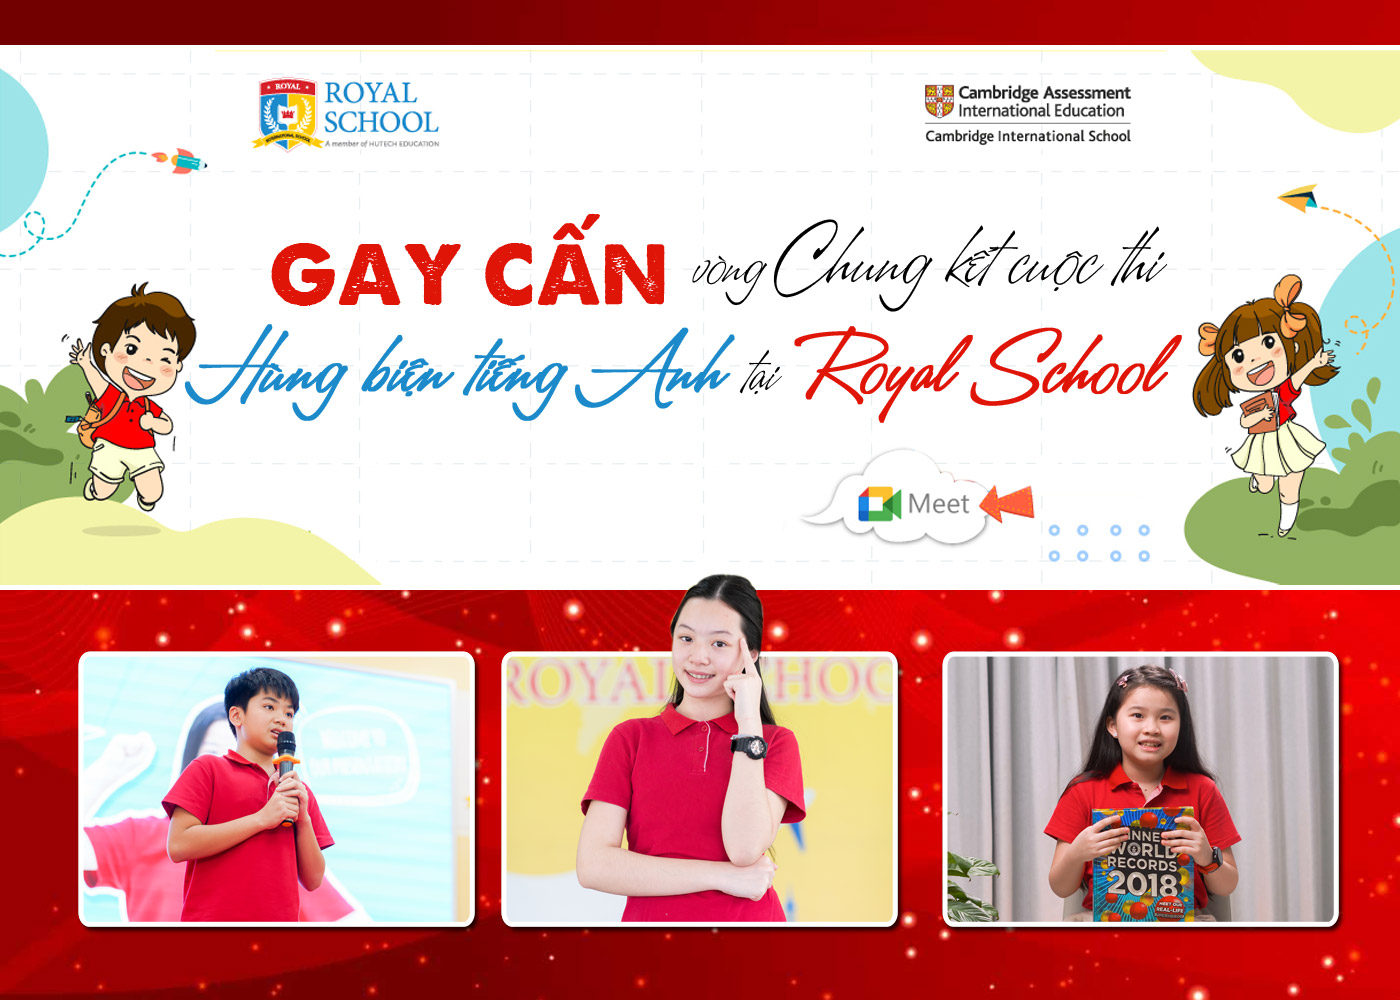 Gay cấn vòng Chung kết cuộc thi Hùng biện tiếng Anh tại Royal School - Ảnh 1